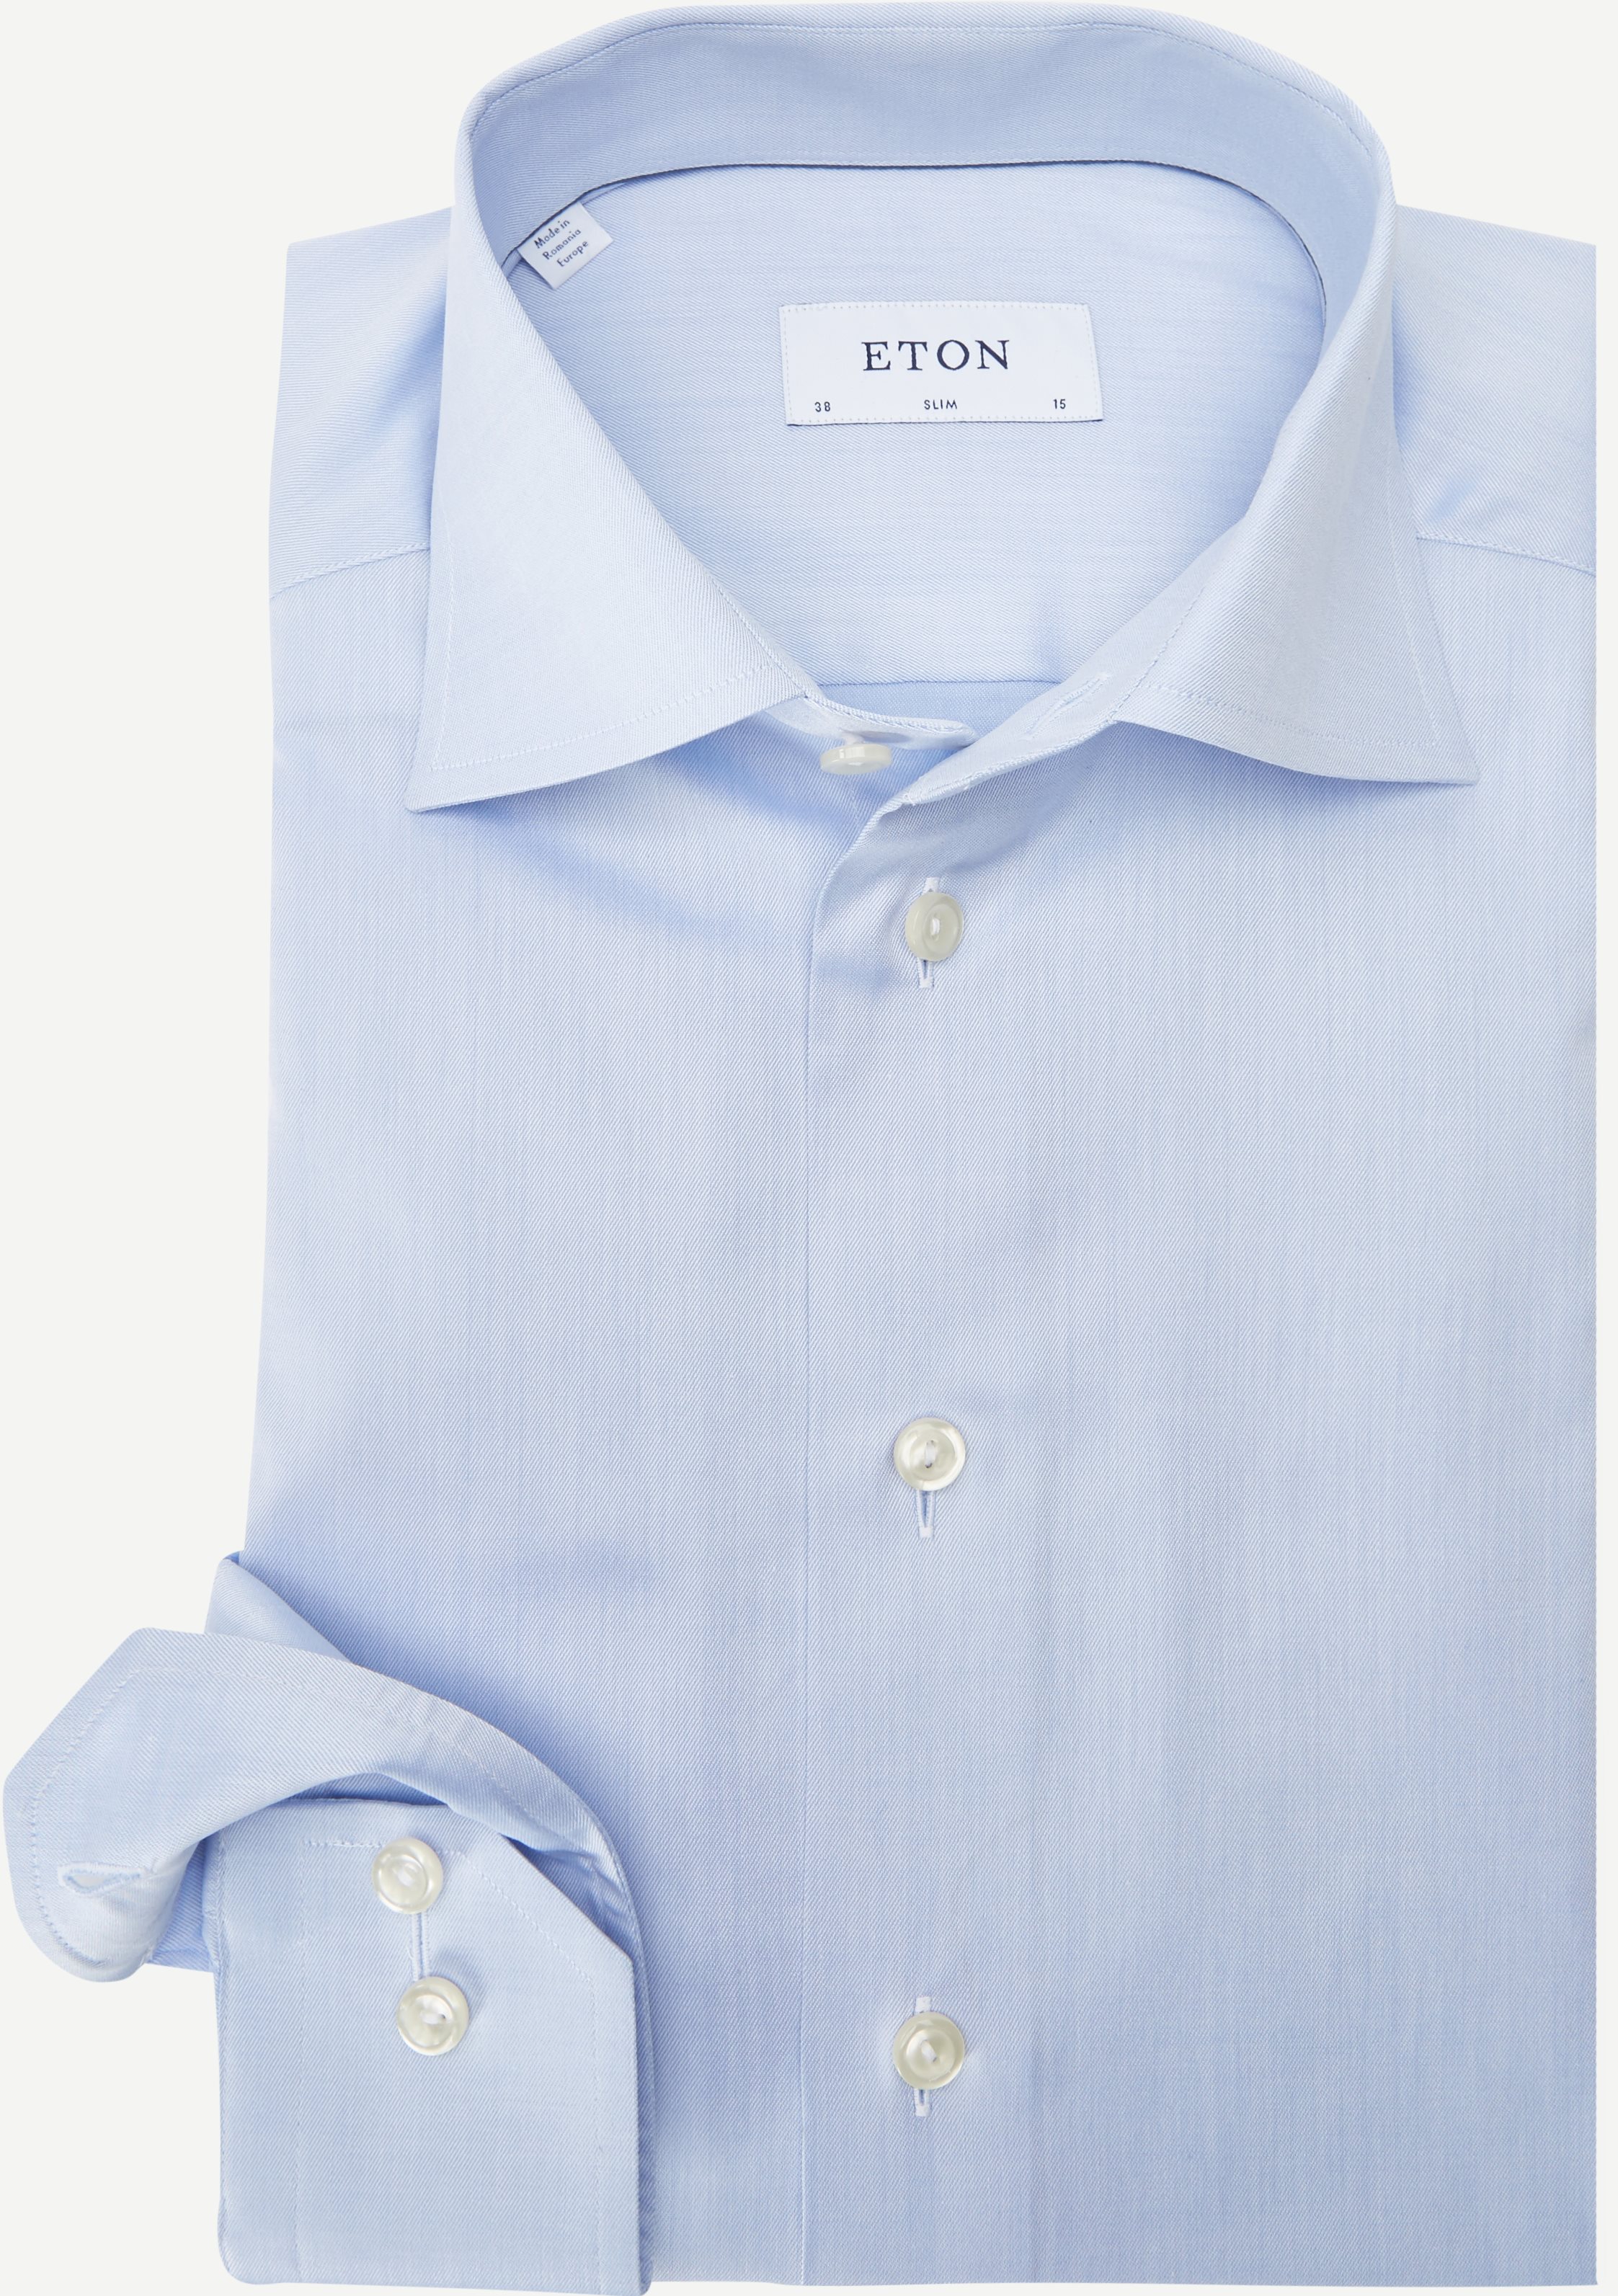 3000 Signature Twill Dress Shirt - Shirts - Slim fit - Blue